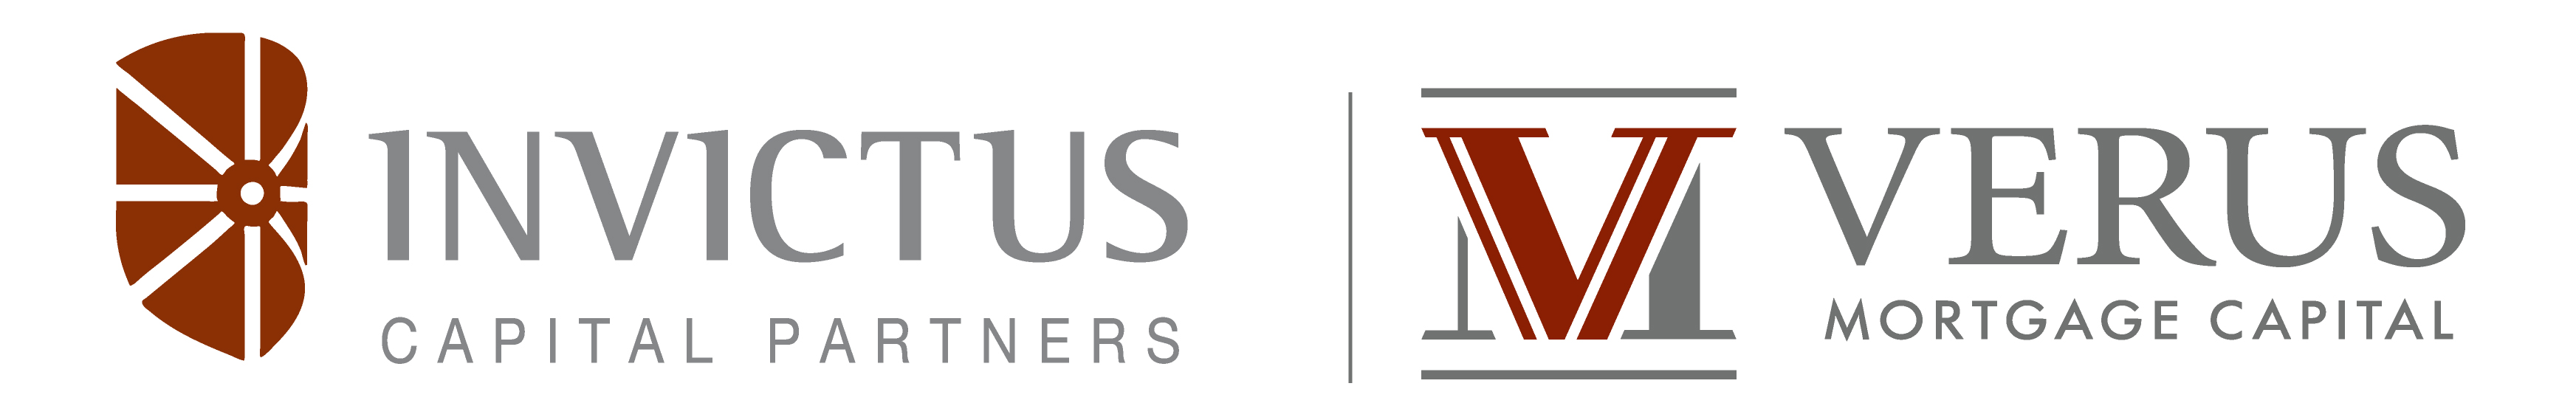 Invictus/Verus Scholarship Program